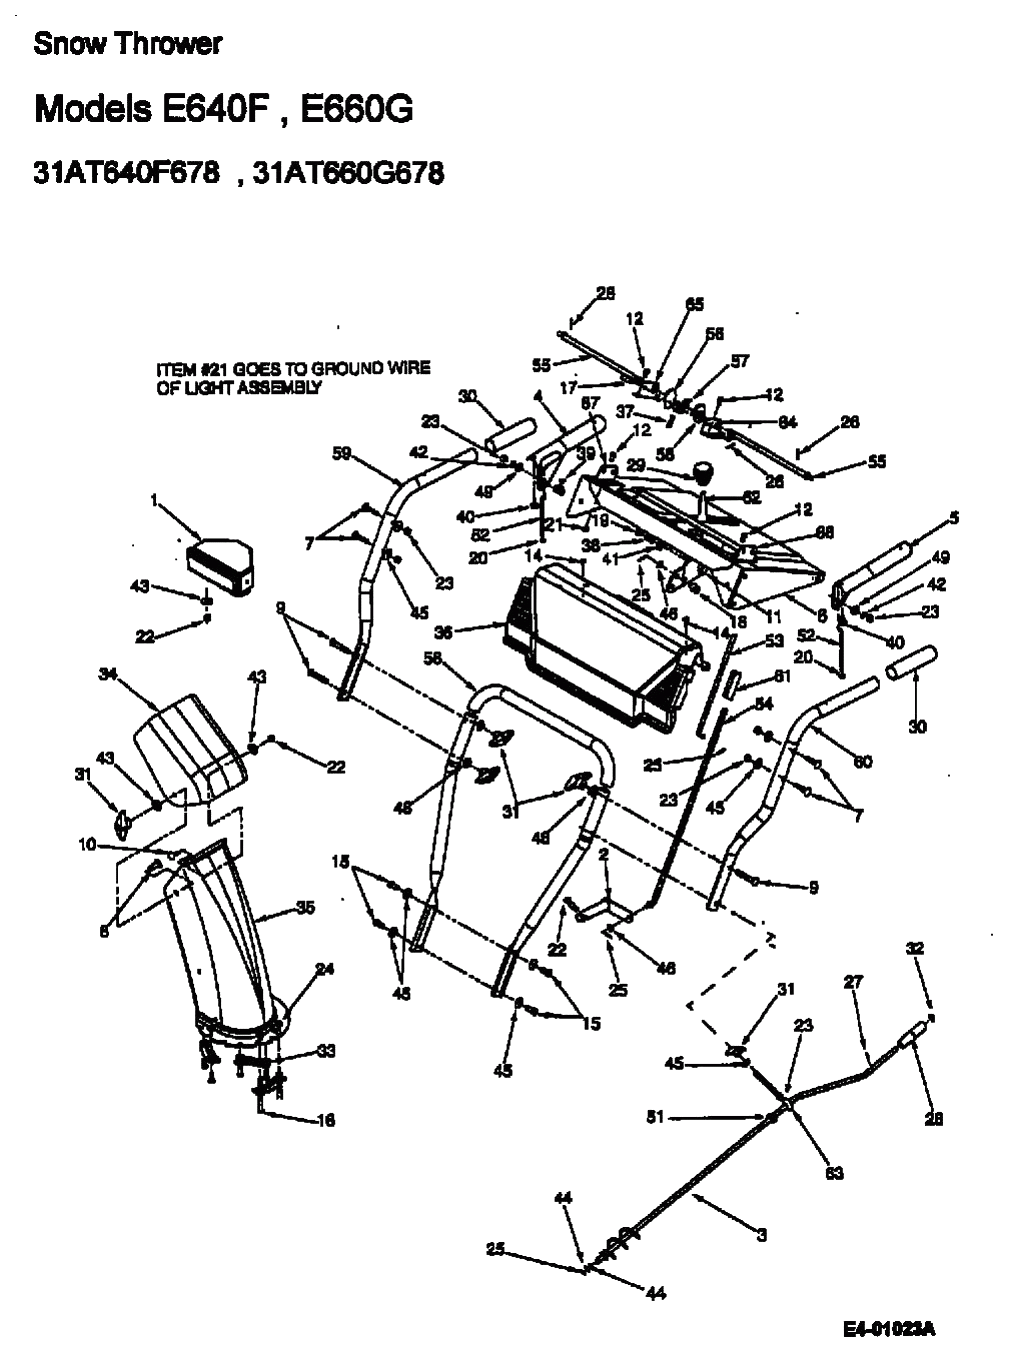 MTD Артикул 31AE640F678 (год выпуска 2000). Приборная панель, Разгрузочный желоб, ручка